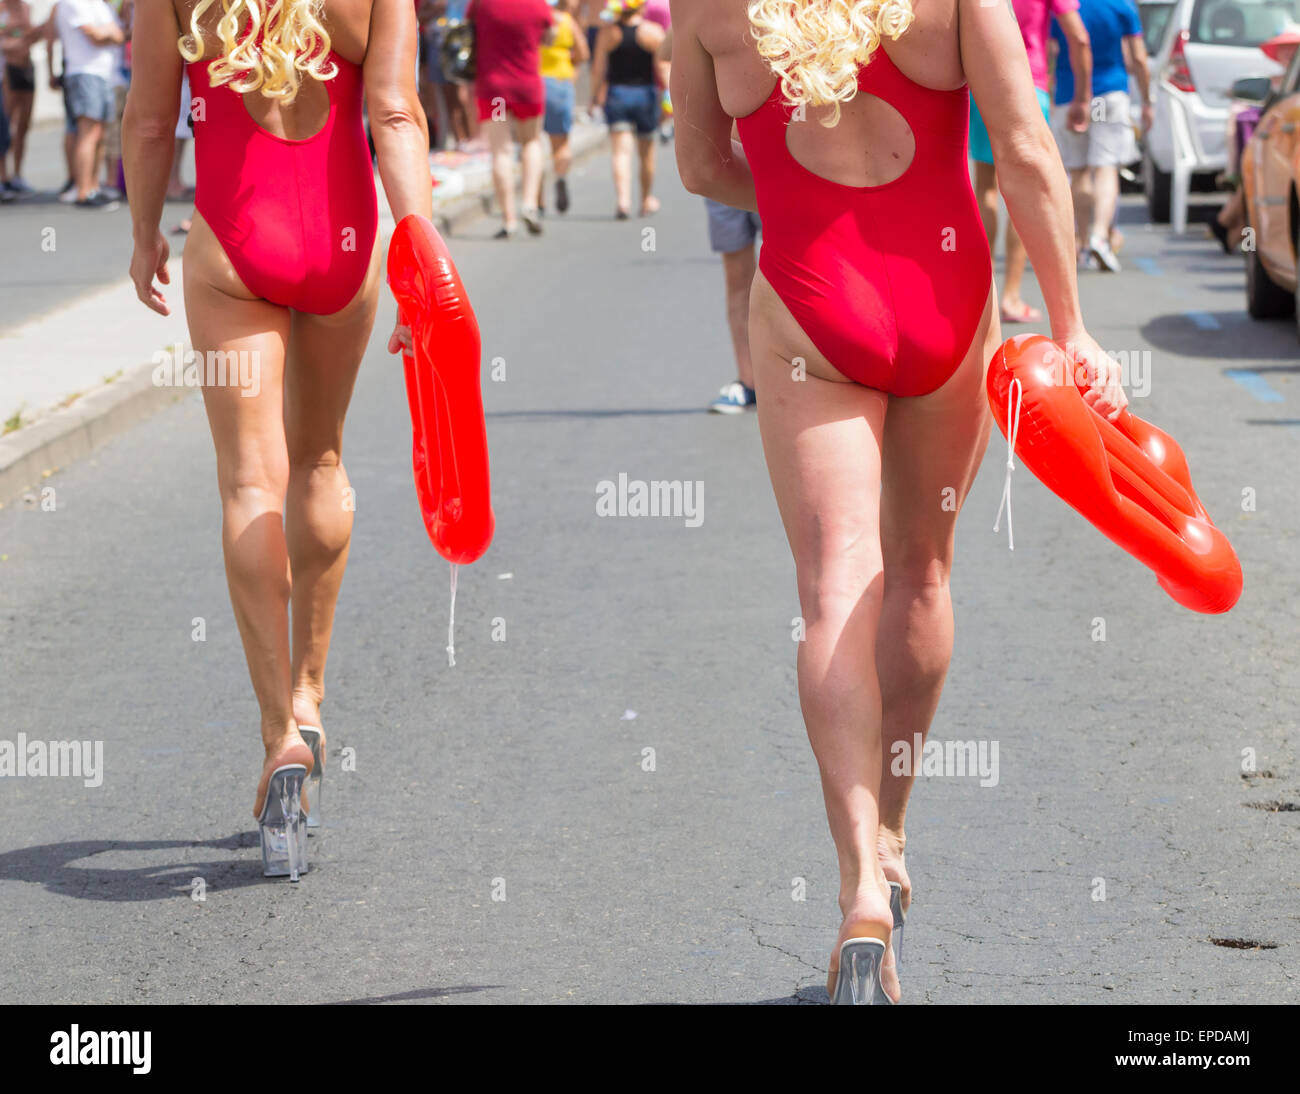 Baywatch Blick auf Maspalomas Gay Pride Parade. Maspalomas, Gran Canaria, Kanarische Inseln, Spanien. Stockfoto